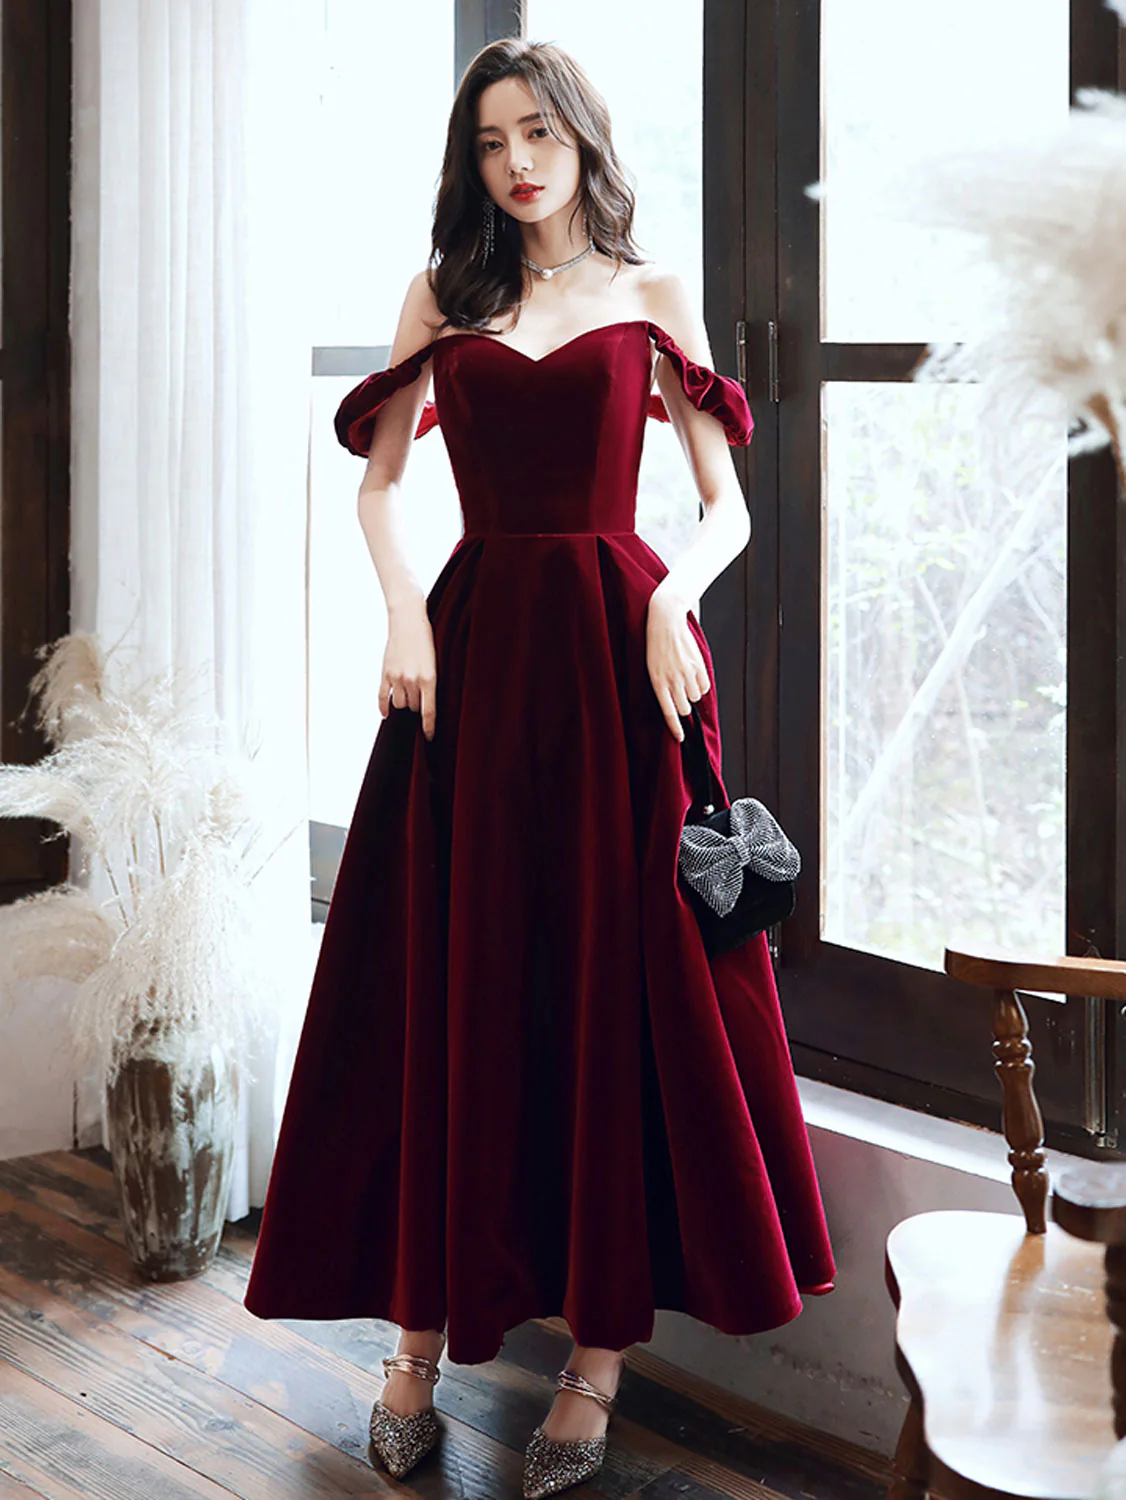 Simple Velvet Tea Length Prom Dresses, Burgundy Velvet Evening Dresses      fg5033